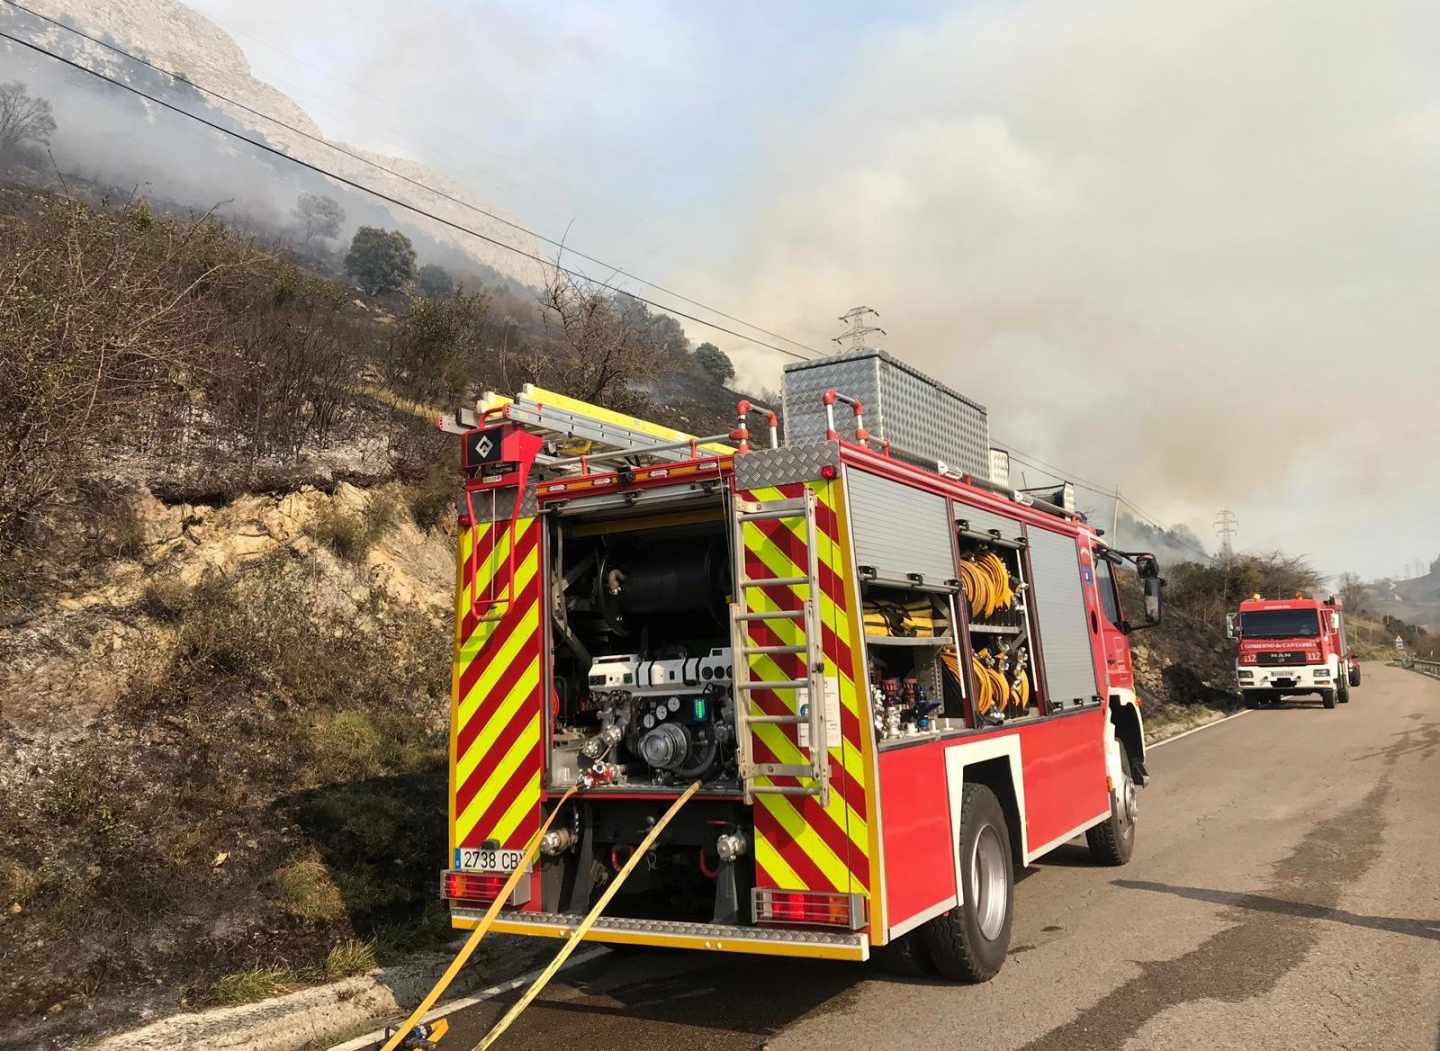 Baja a 32 el número de incendios activos en Cantabria